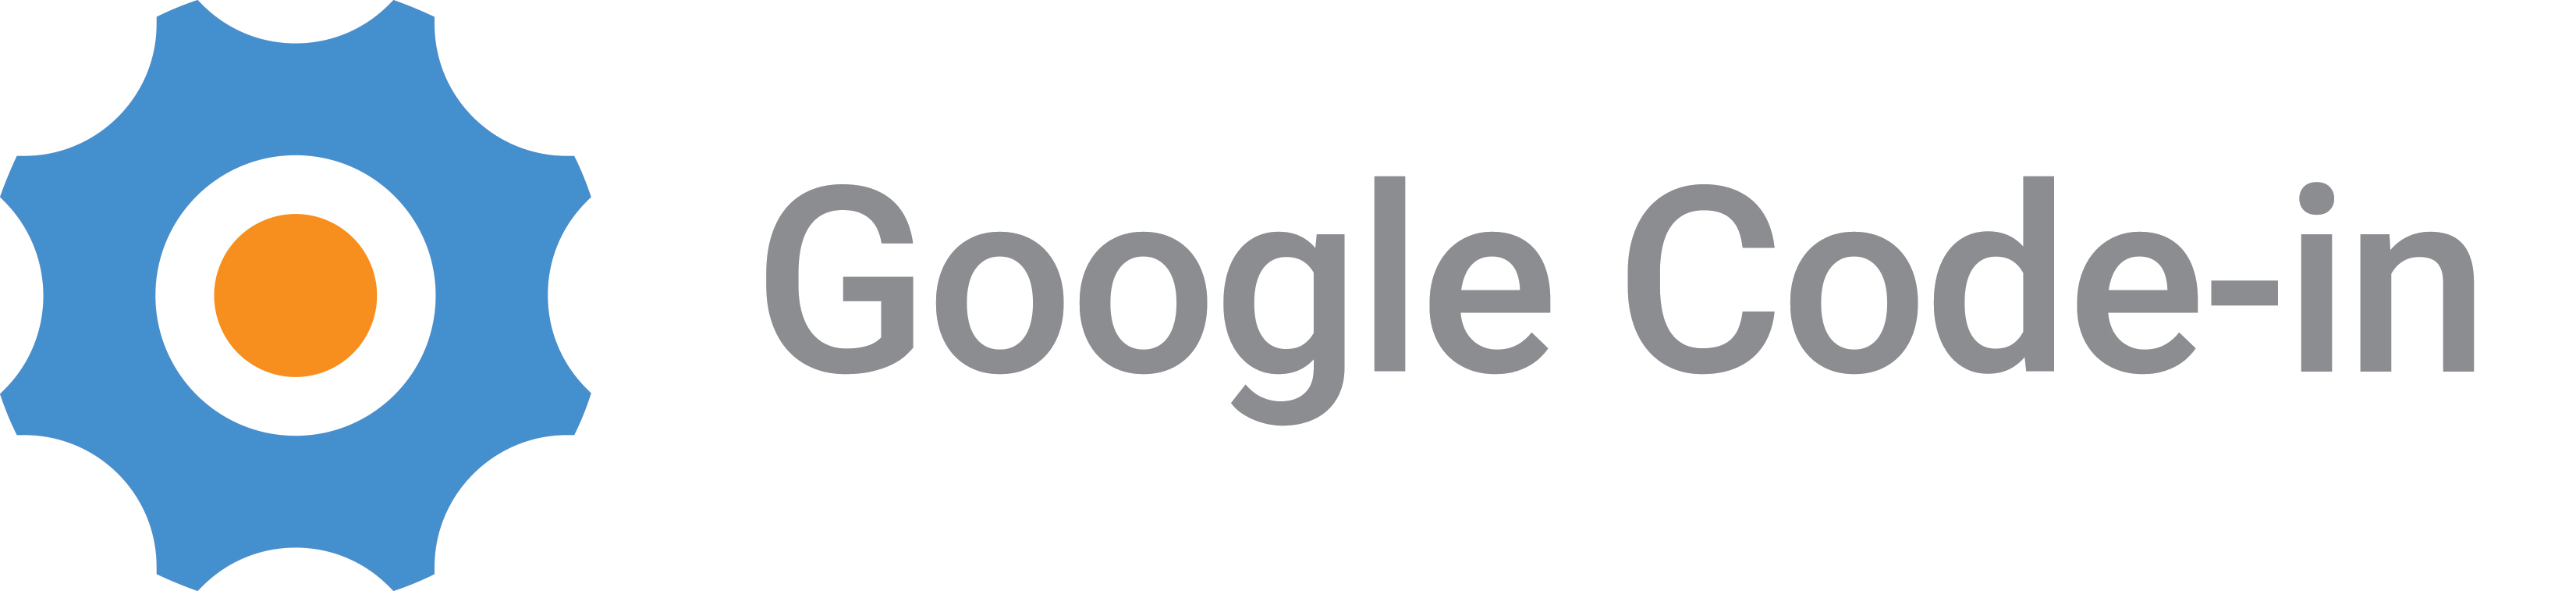 Google Code-In Logo